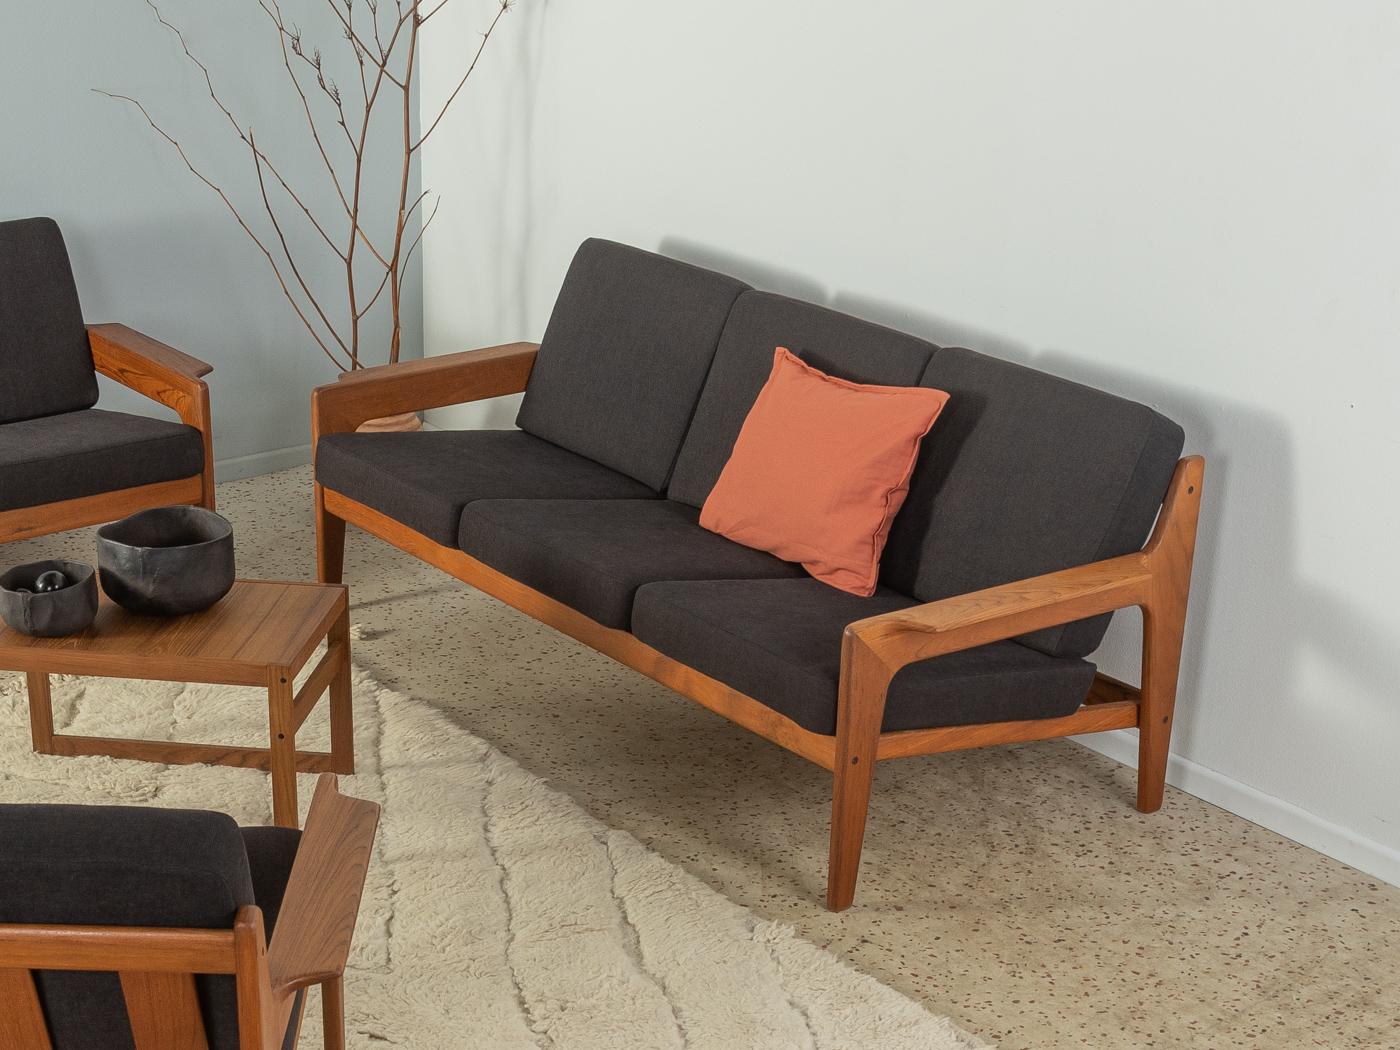 Klassisches 3-Sitzer-Sofa in Teakholz aus den 1960er Jahren von Arne Wahl Iversen für Komfort. Das Sofa wurde neu gepolstert und mit einem hochwertigen Stoff in Schwarz bezogen.

Qualitätsmerkmale:
    vollendetes Design: perfekte Proportionen und